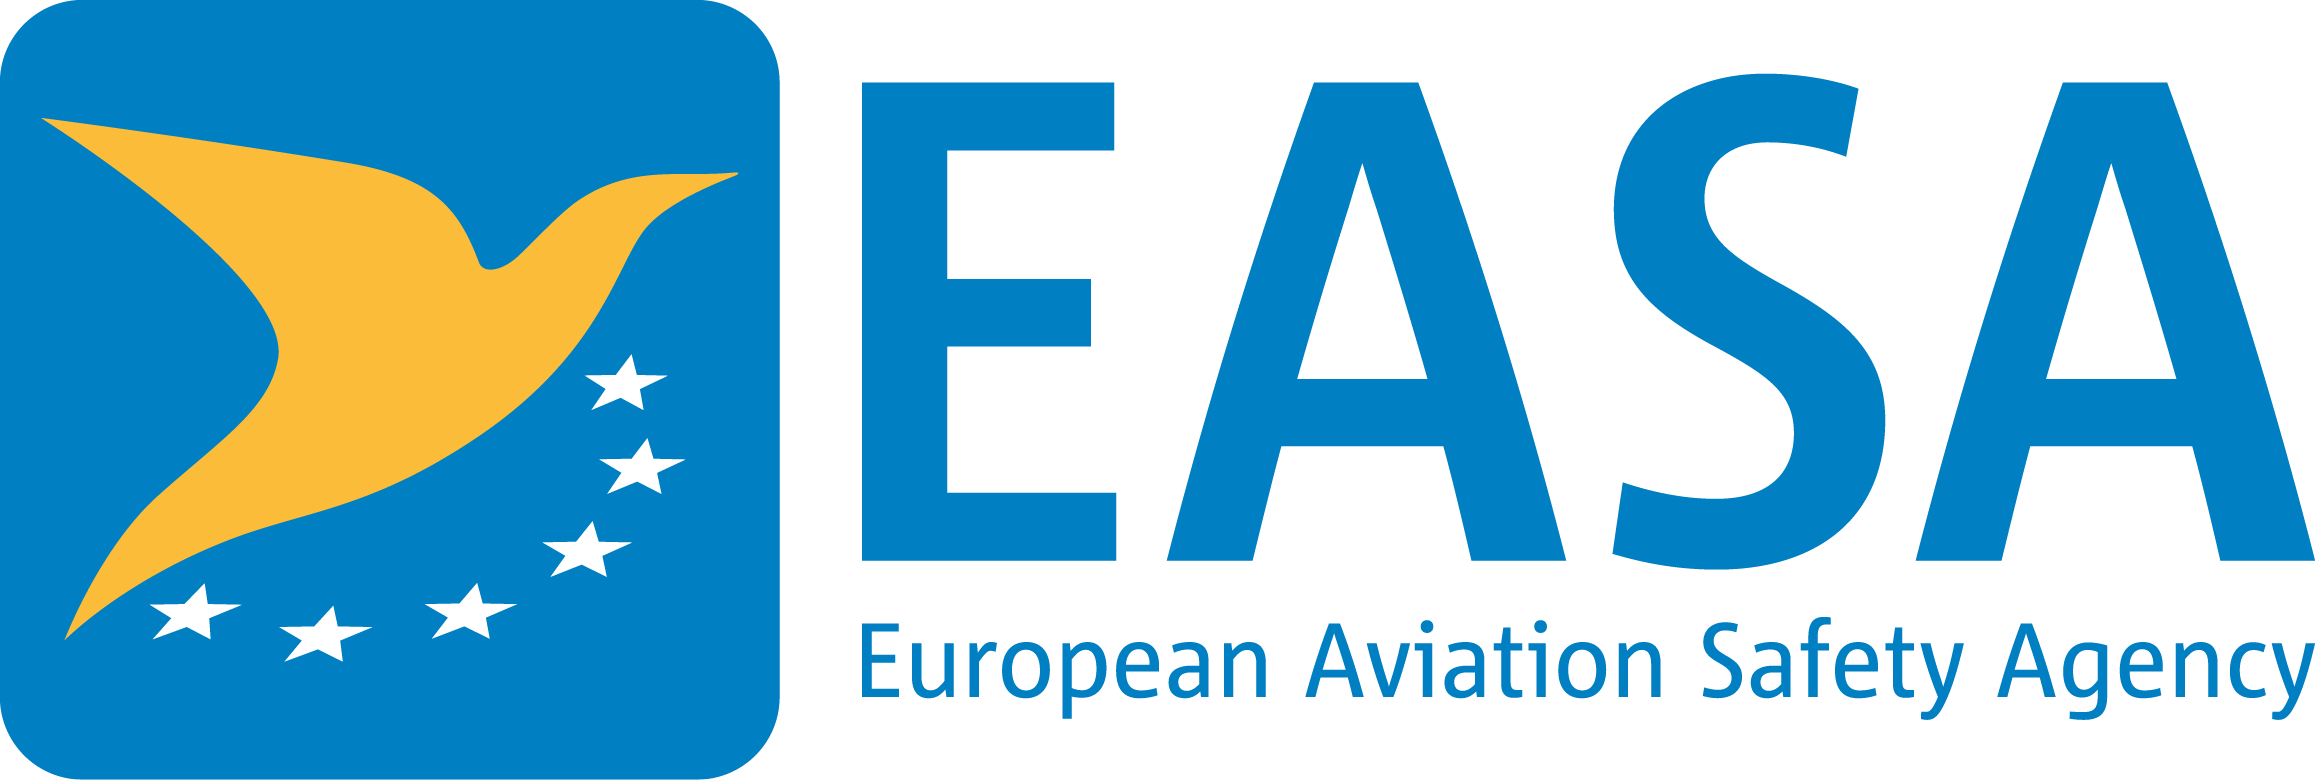 EASA_Logo.png